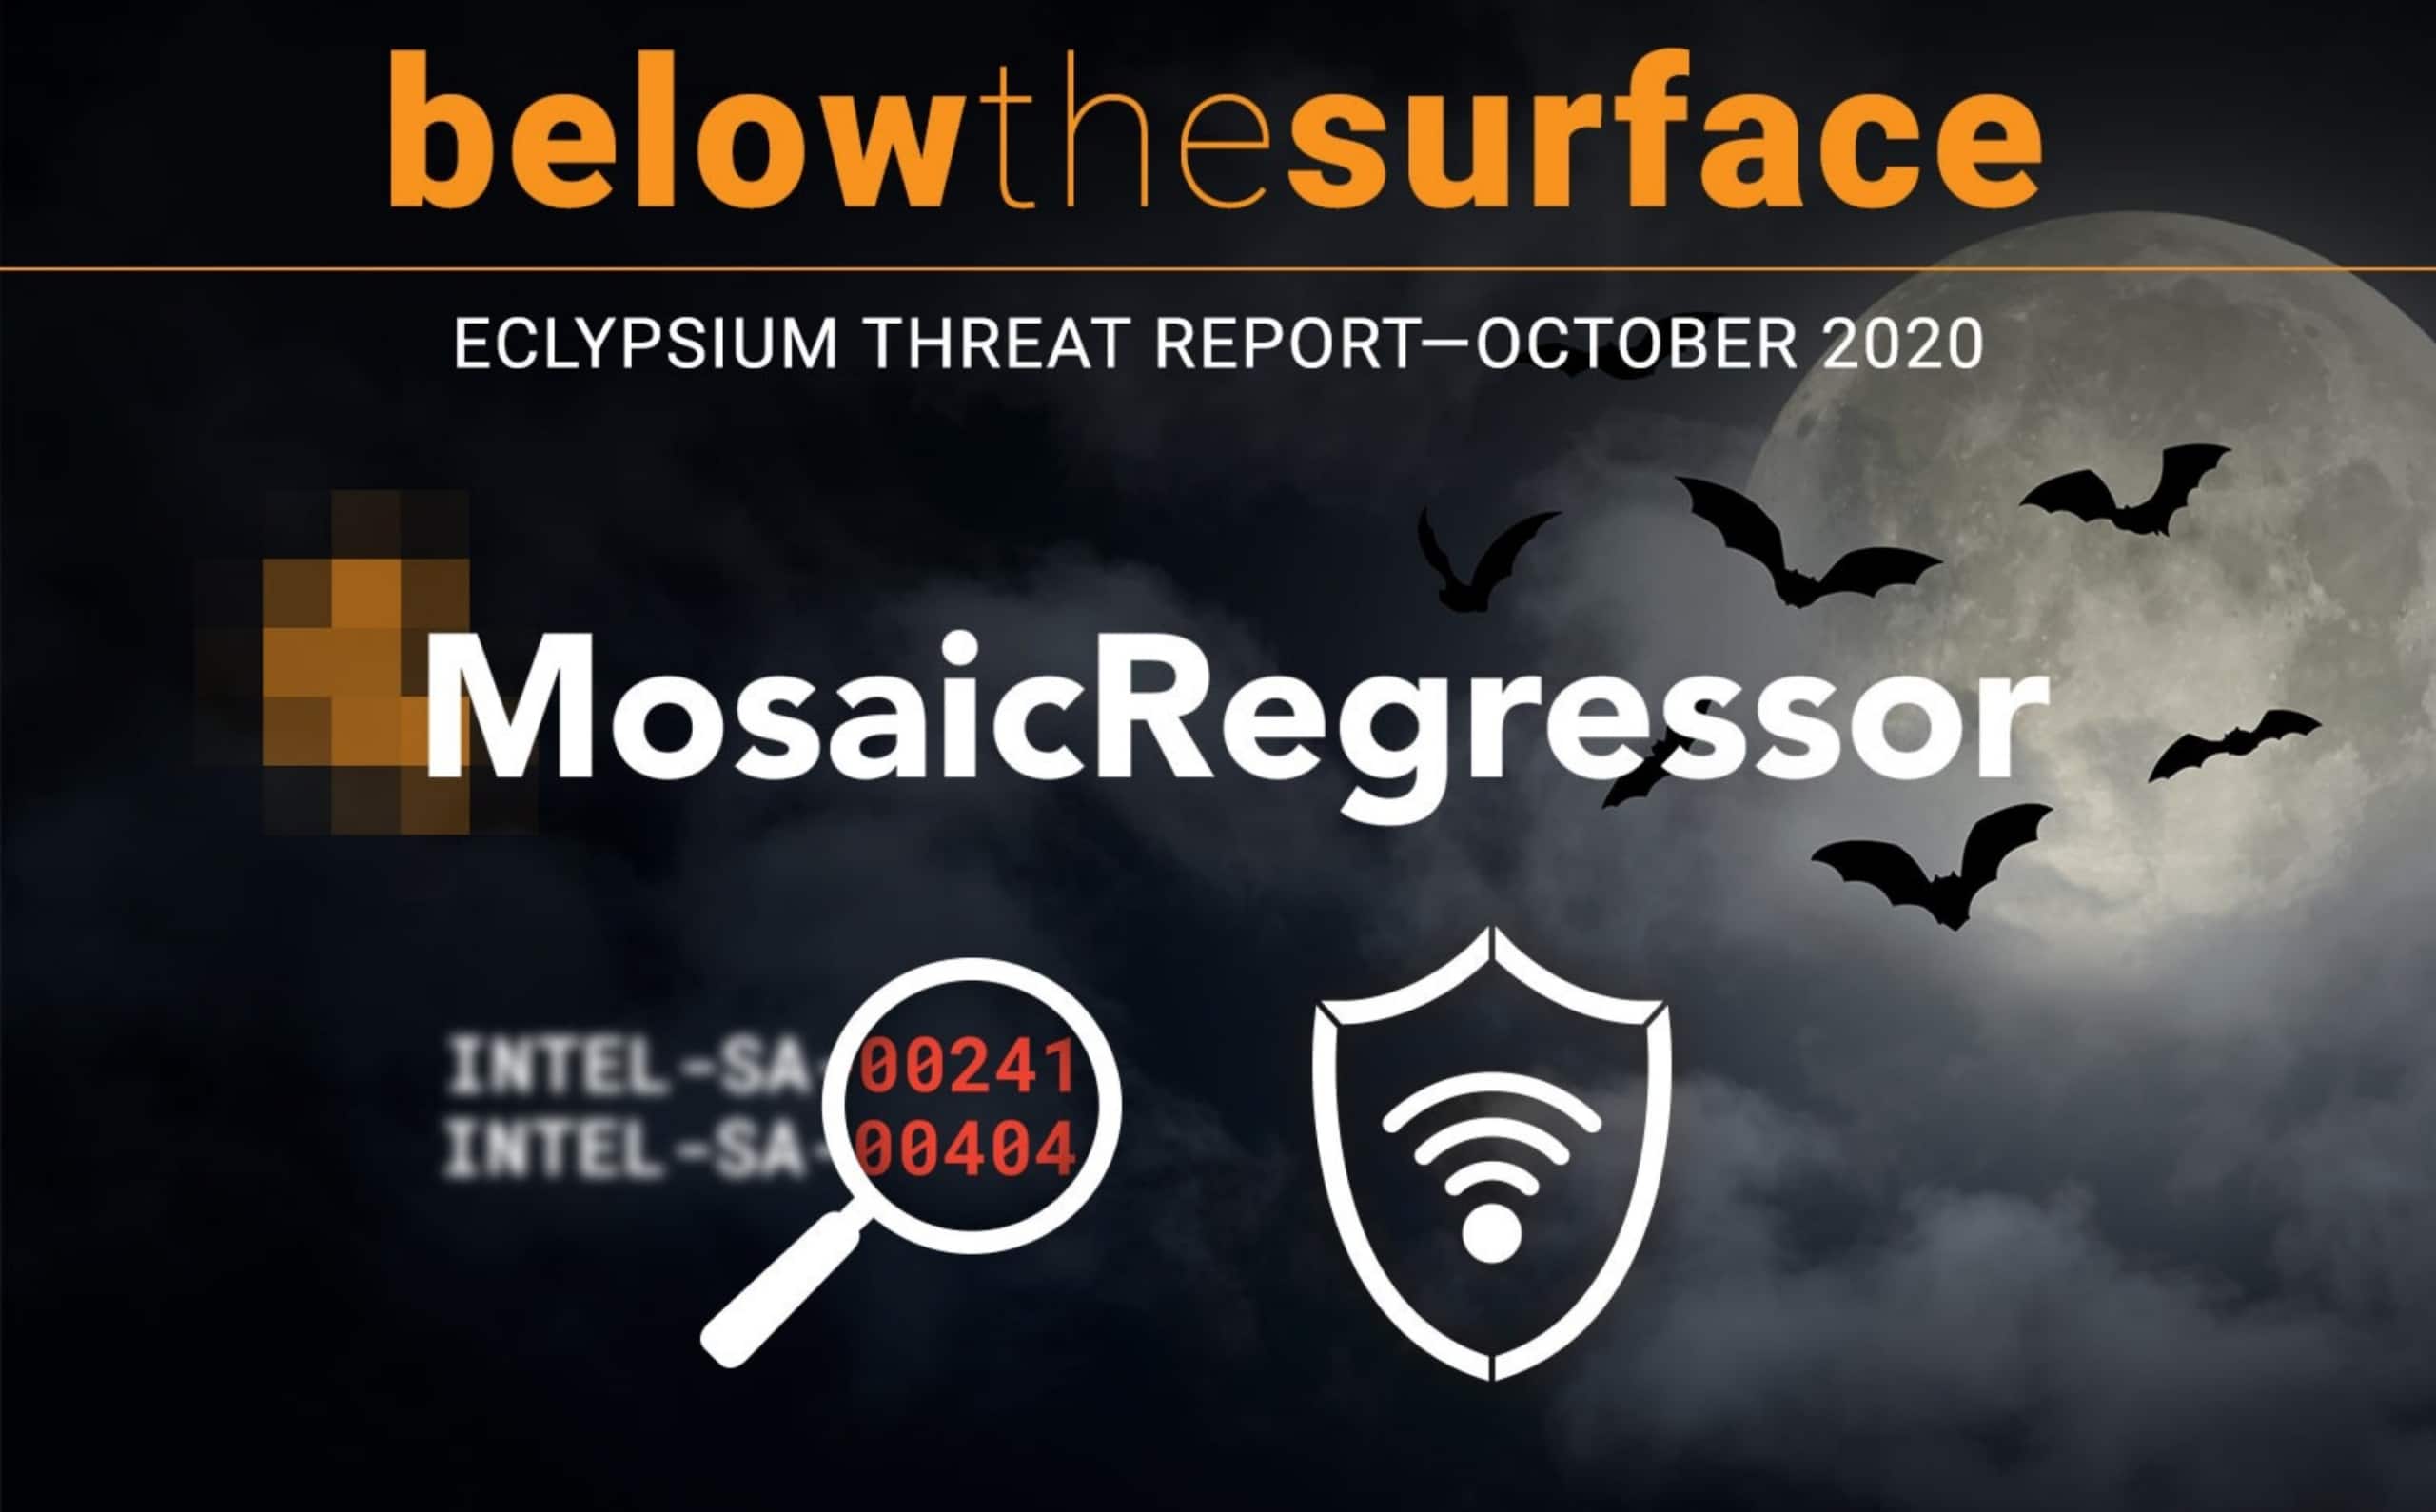 Eclypsium Threat Report October 2020 Firmware osaicRegressor